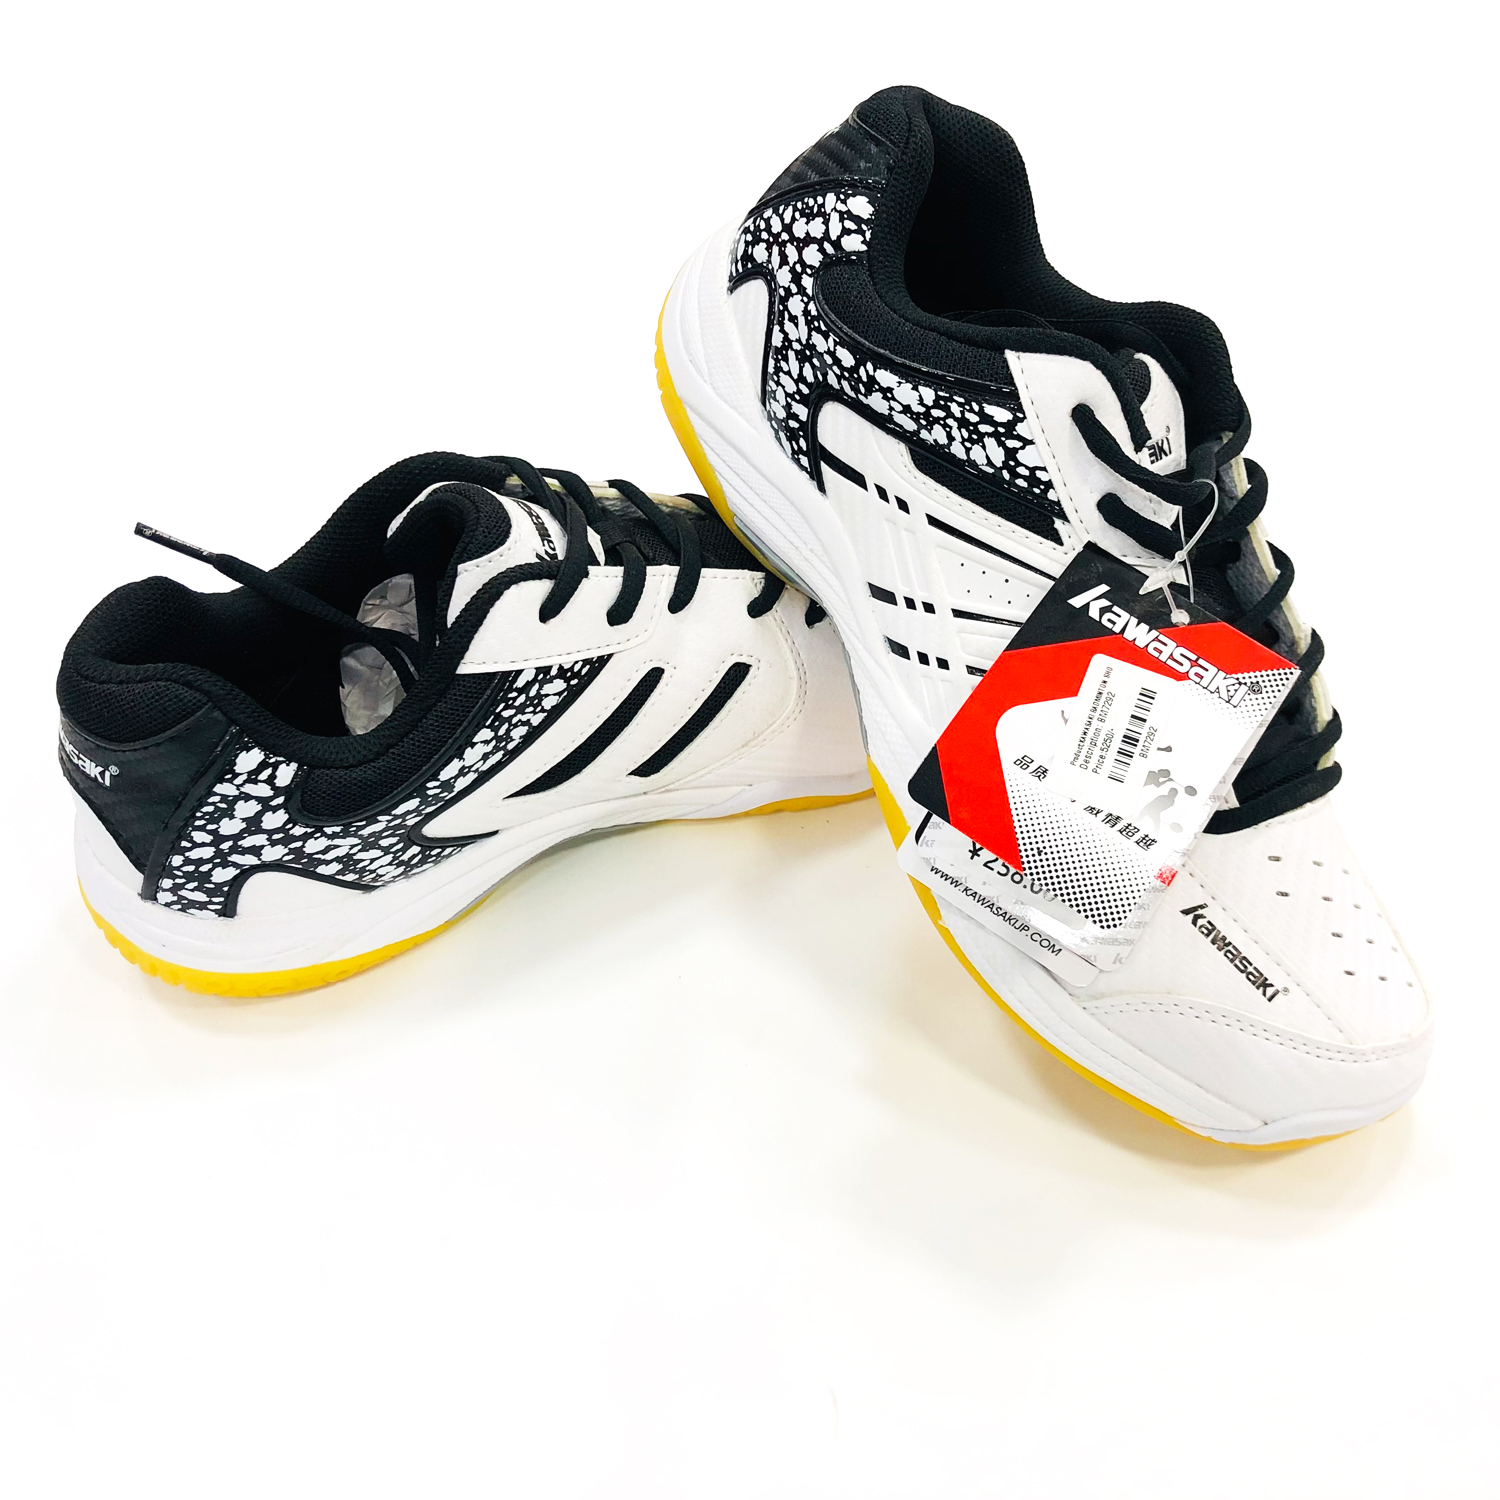 Kawasaki Badminton shoes